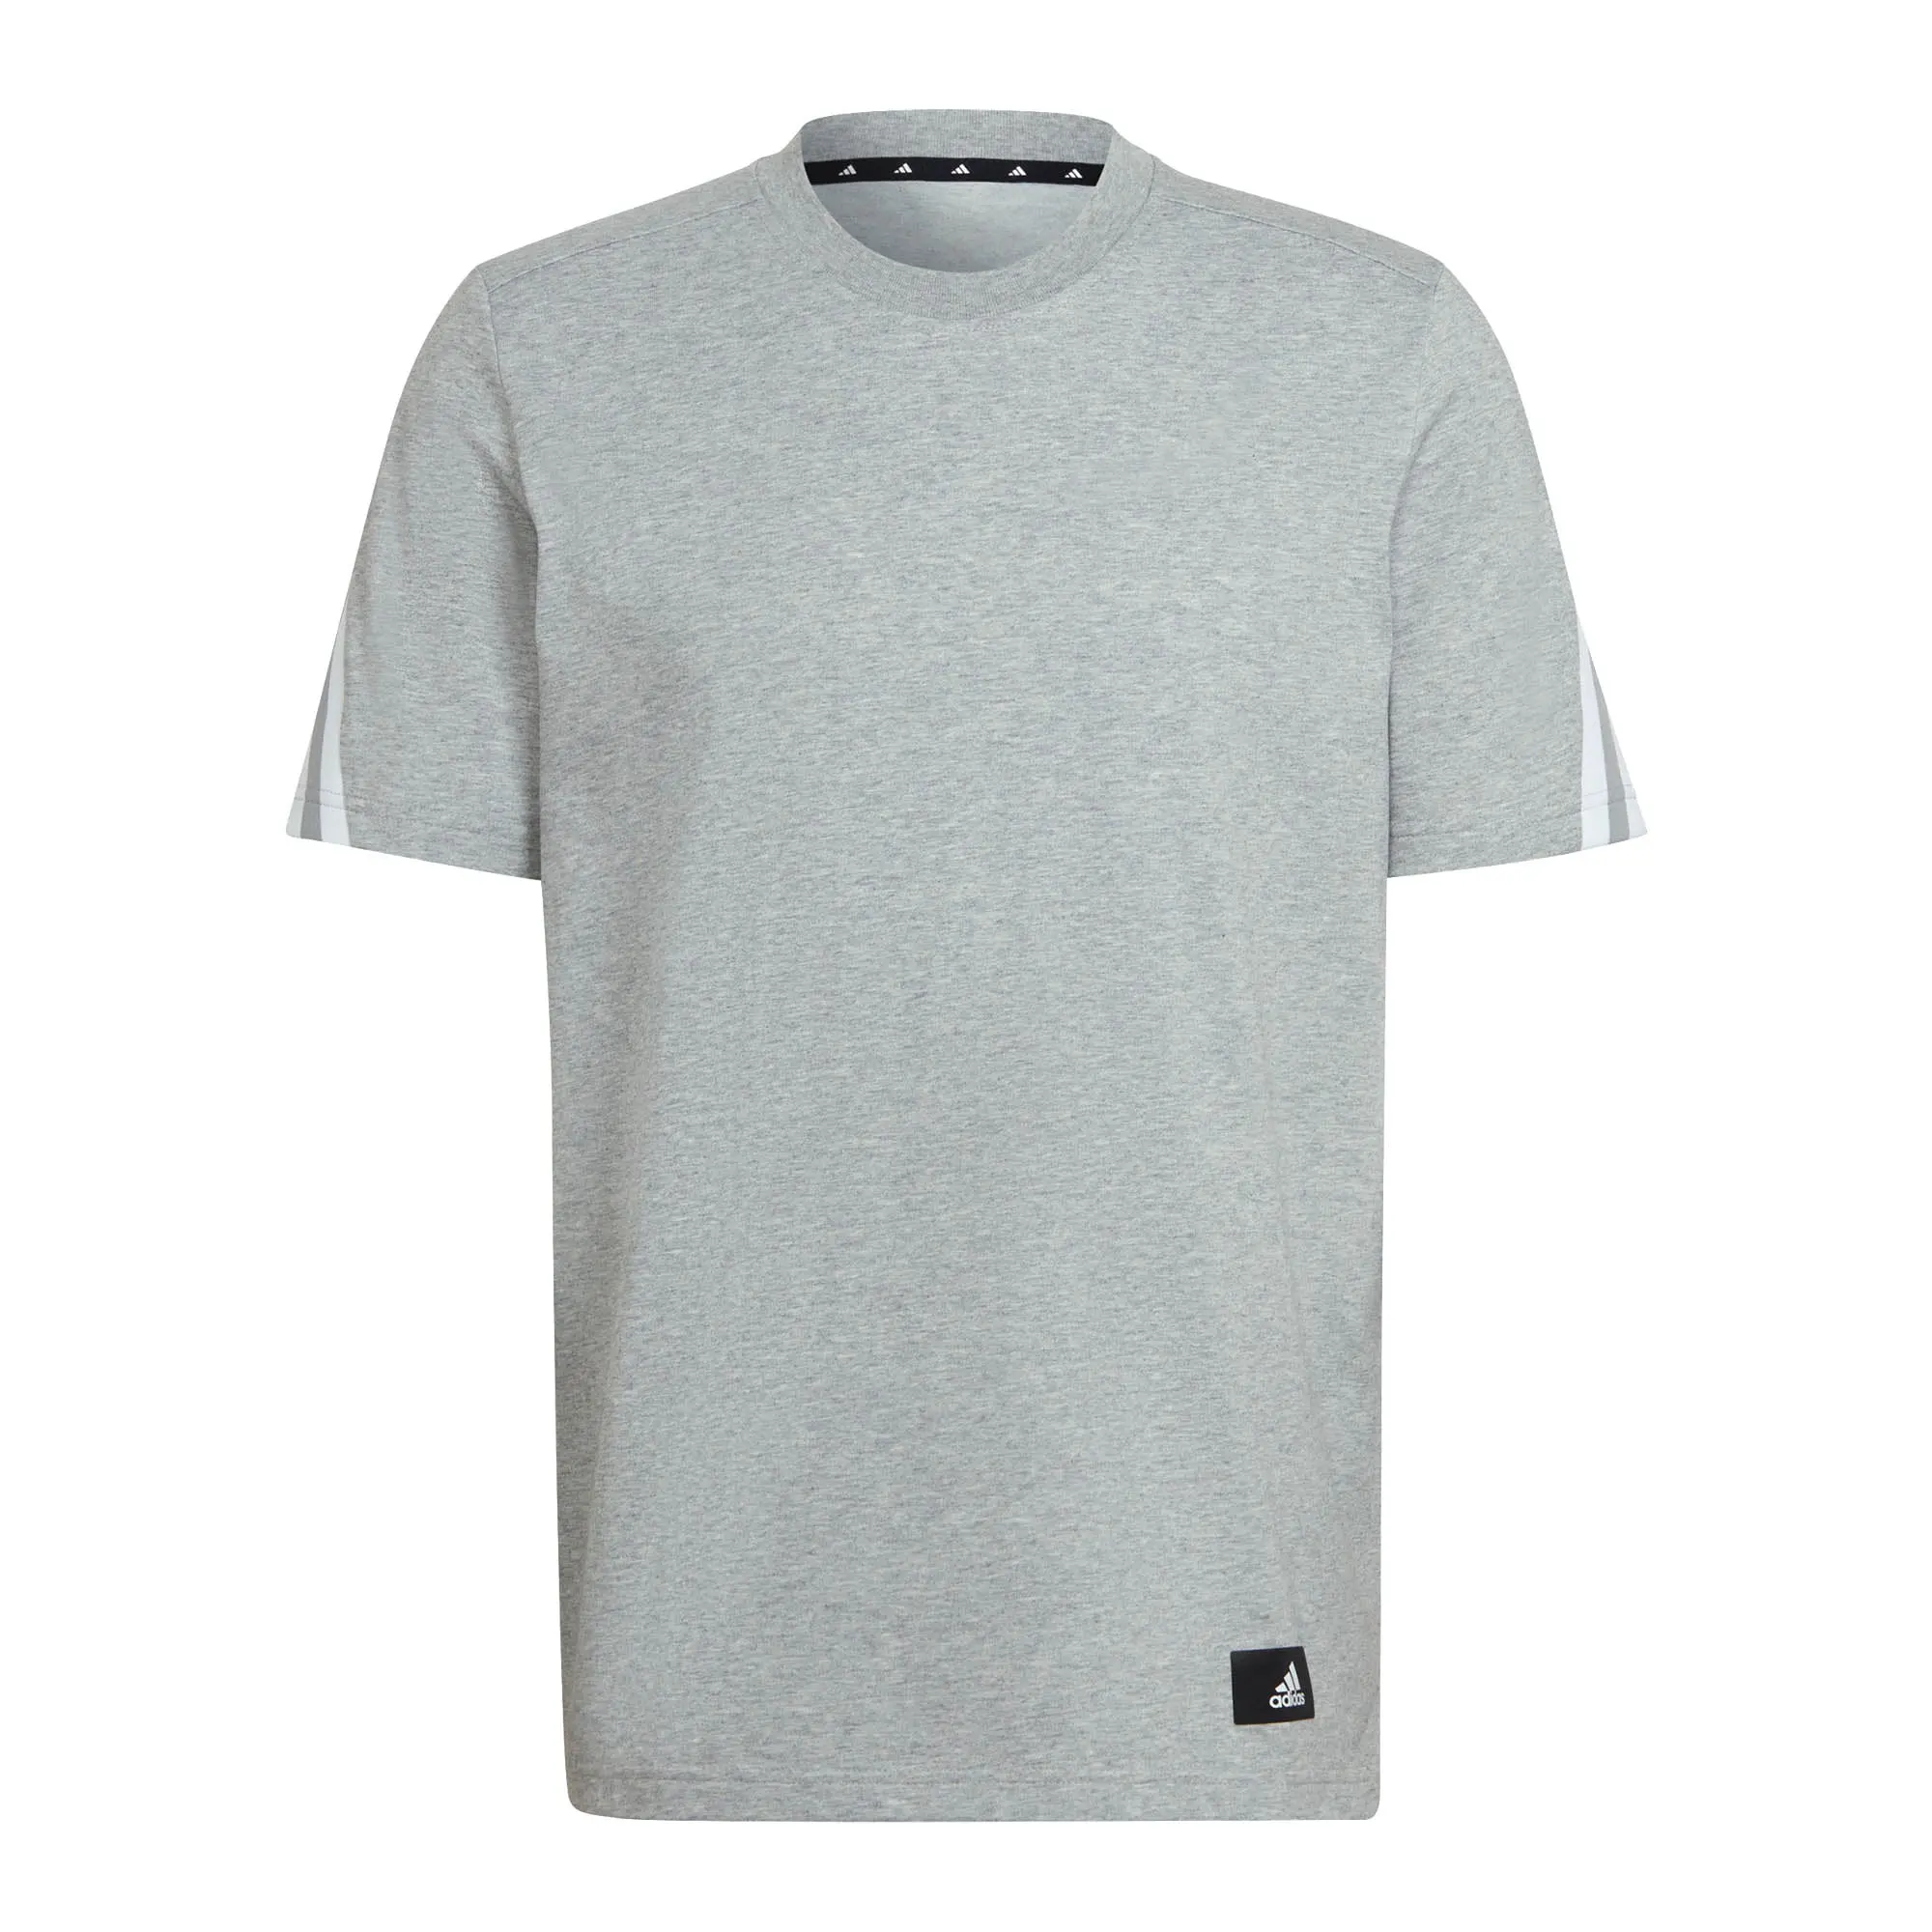 Adidas Future Icons 3-Stripes Logo Mens T-Shirt Grey - Xl